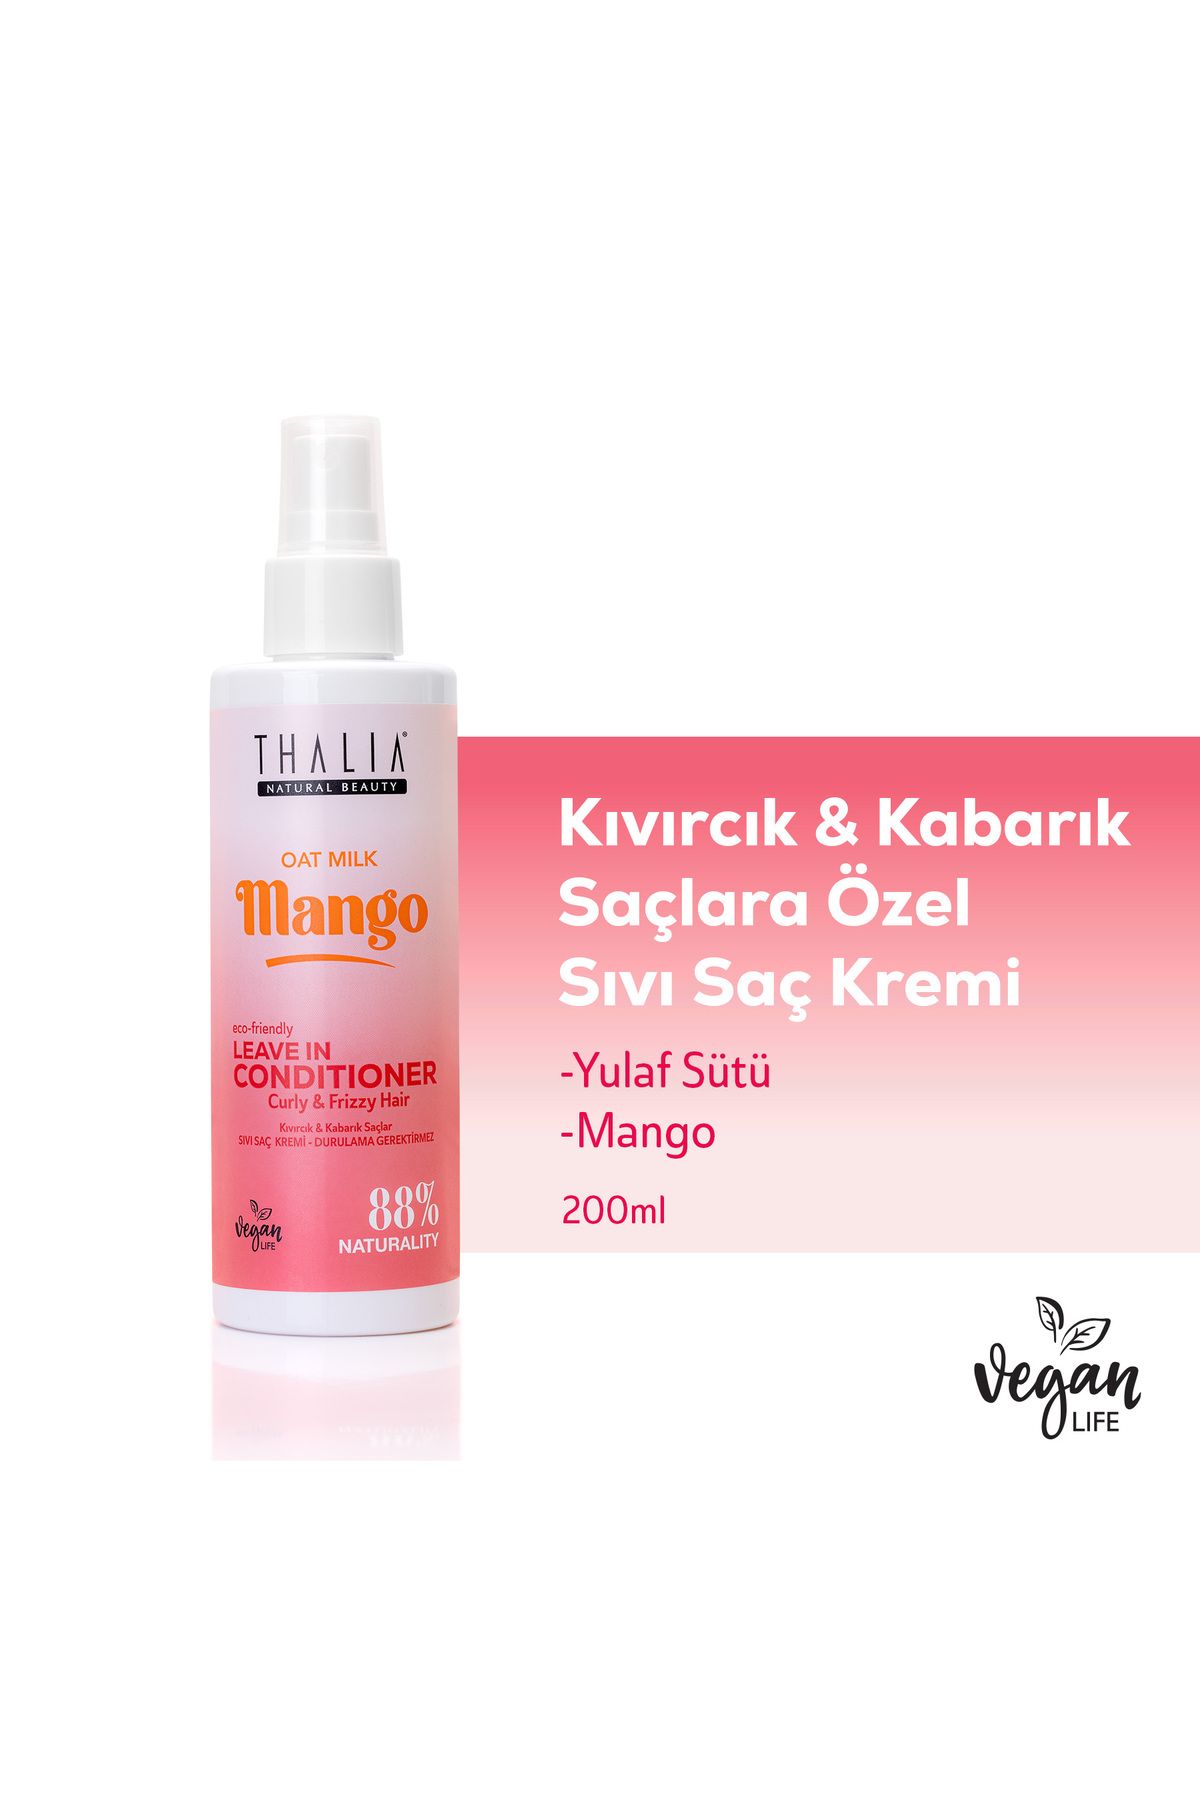 Thalia Yulaf Sütü & Mango Özlü Kıvırcık & Kabarık Saçlara Özel Sıvı Bakım Kremi 200ml